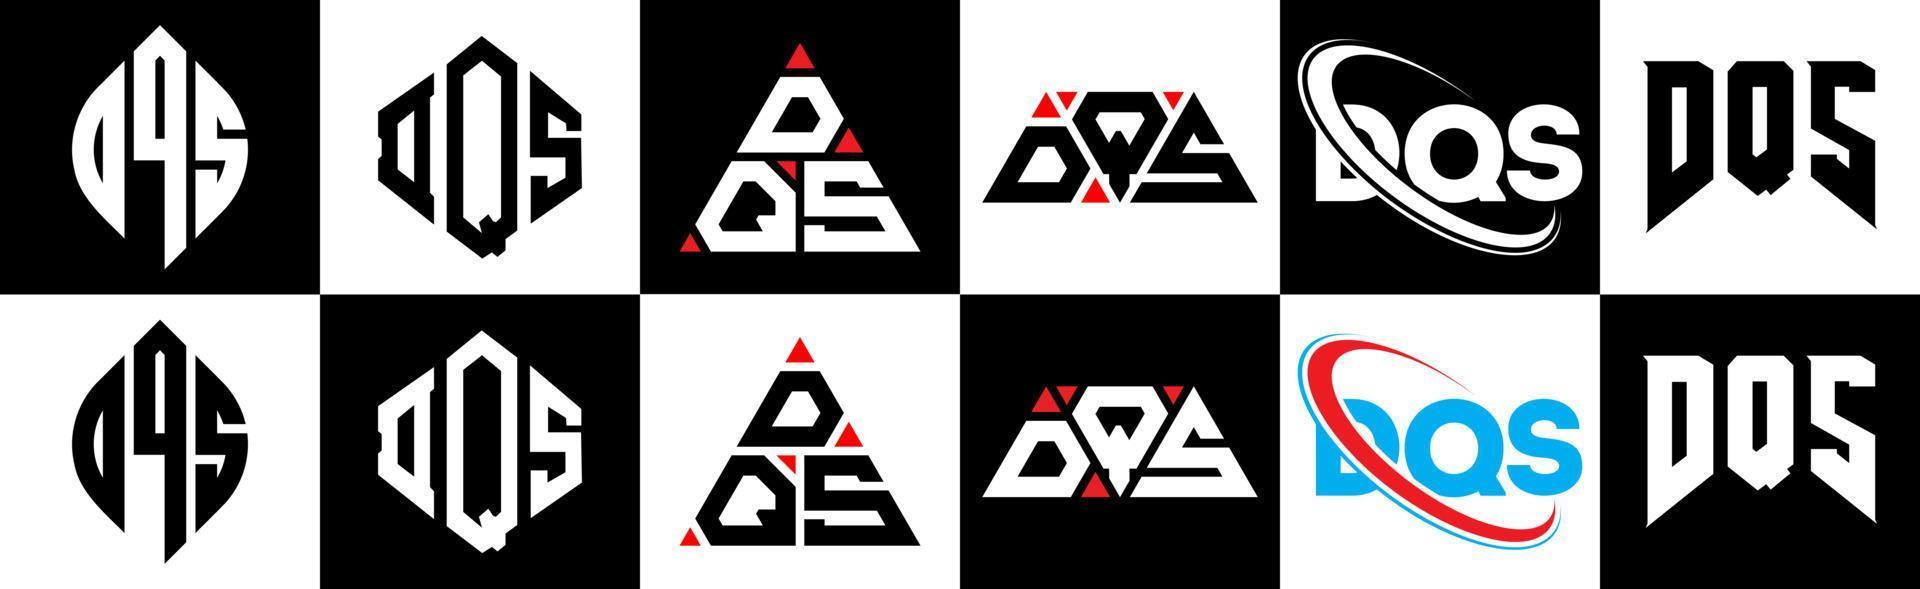 création de logo de lettre dqs en six styles. polygone dqs, cercle, triangle, hexagone, style plat et simple avec logo de lettre de variation de couleur noir et blanc dans un plan de travail. logo minimaliste et classique dqs vecteur